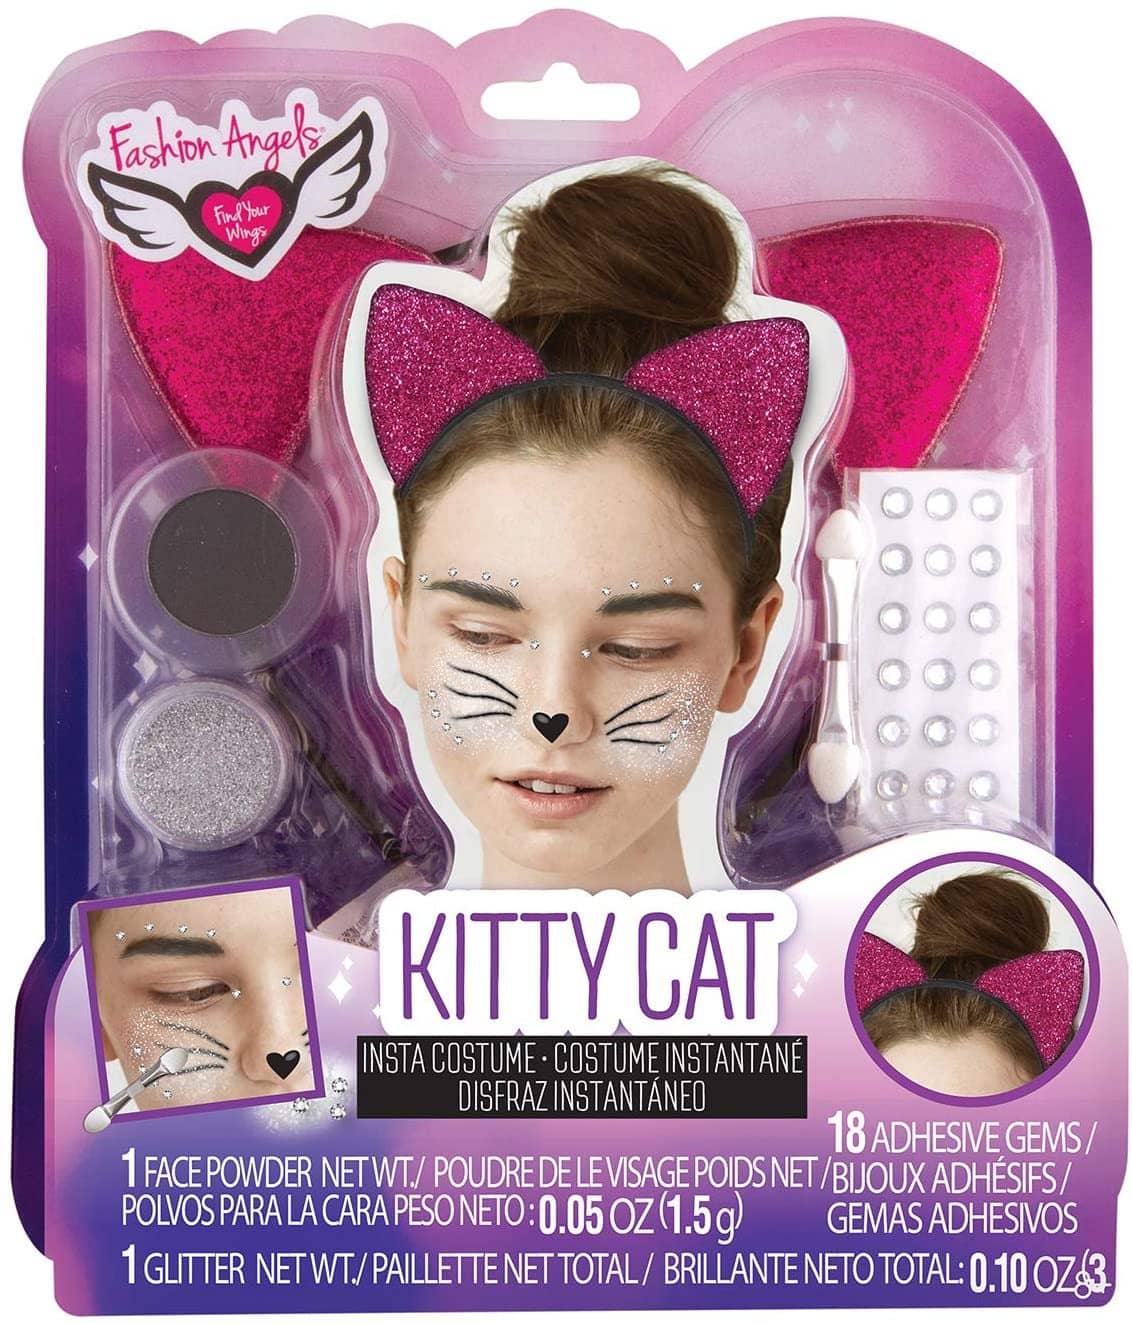 Kitty Cat Insta Costume-Kidding Around NYC